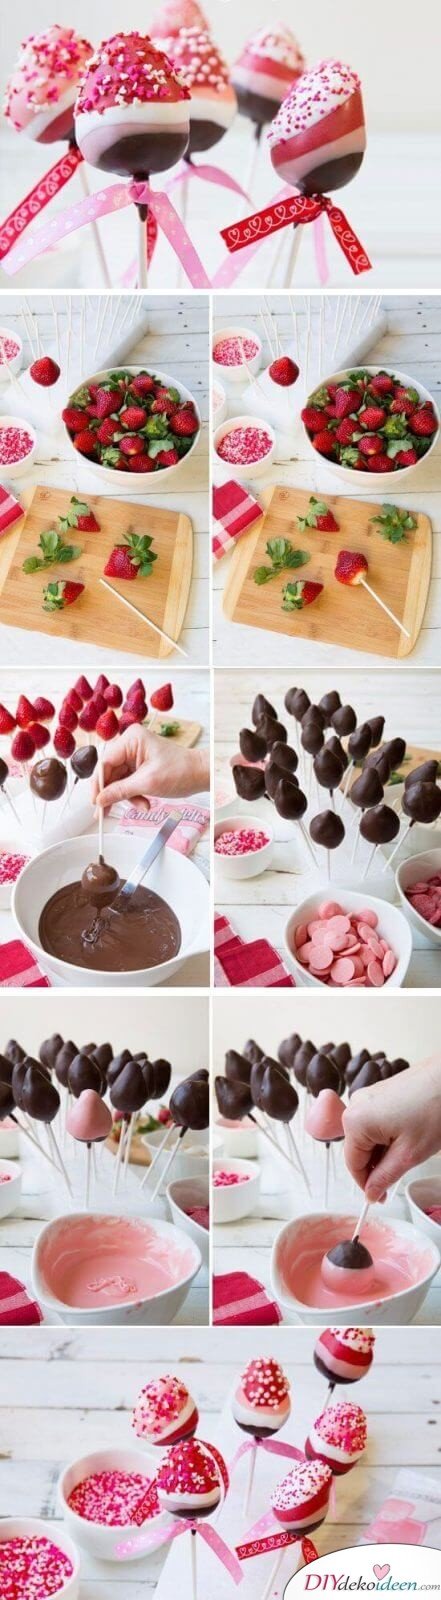 Leckere Erdbeeren mit Schokolade - Dessert zum Valentinstag